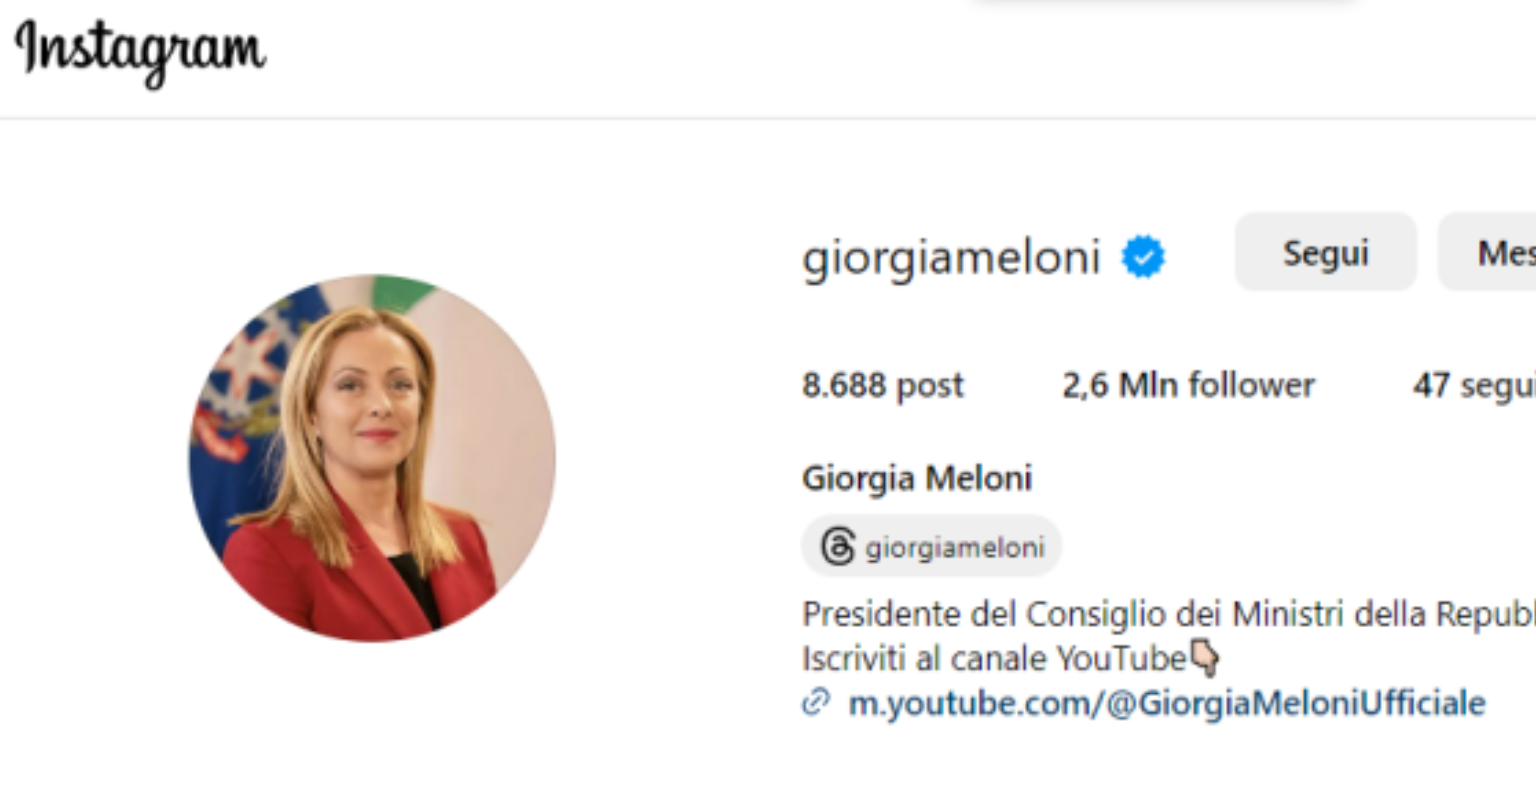 Giorgia Meloni hackerato profilo Instagram